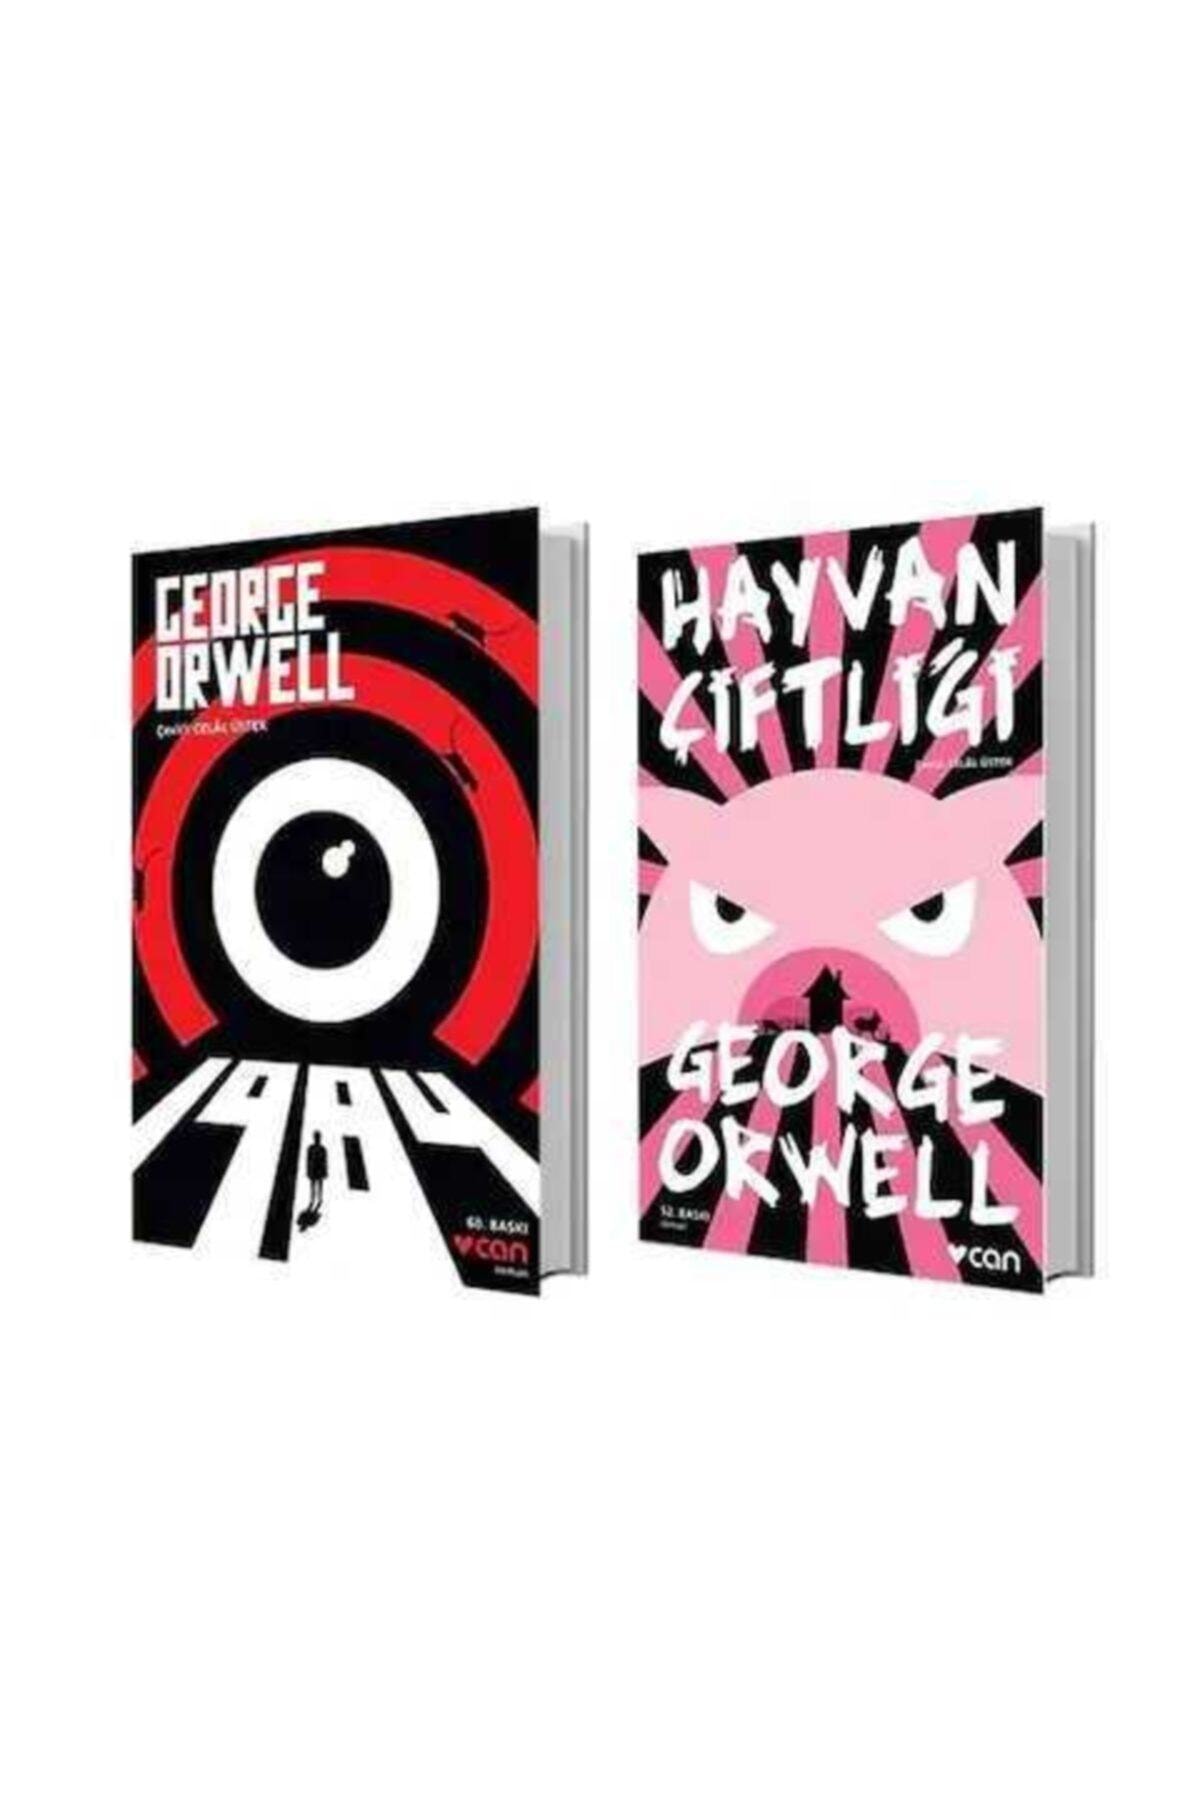 Hayvan Çiftliği - 1984 - George Orwell 2 Kitap Bir Arada